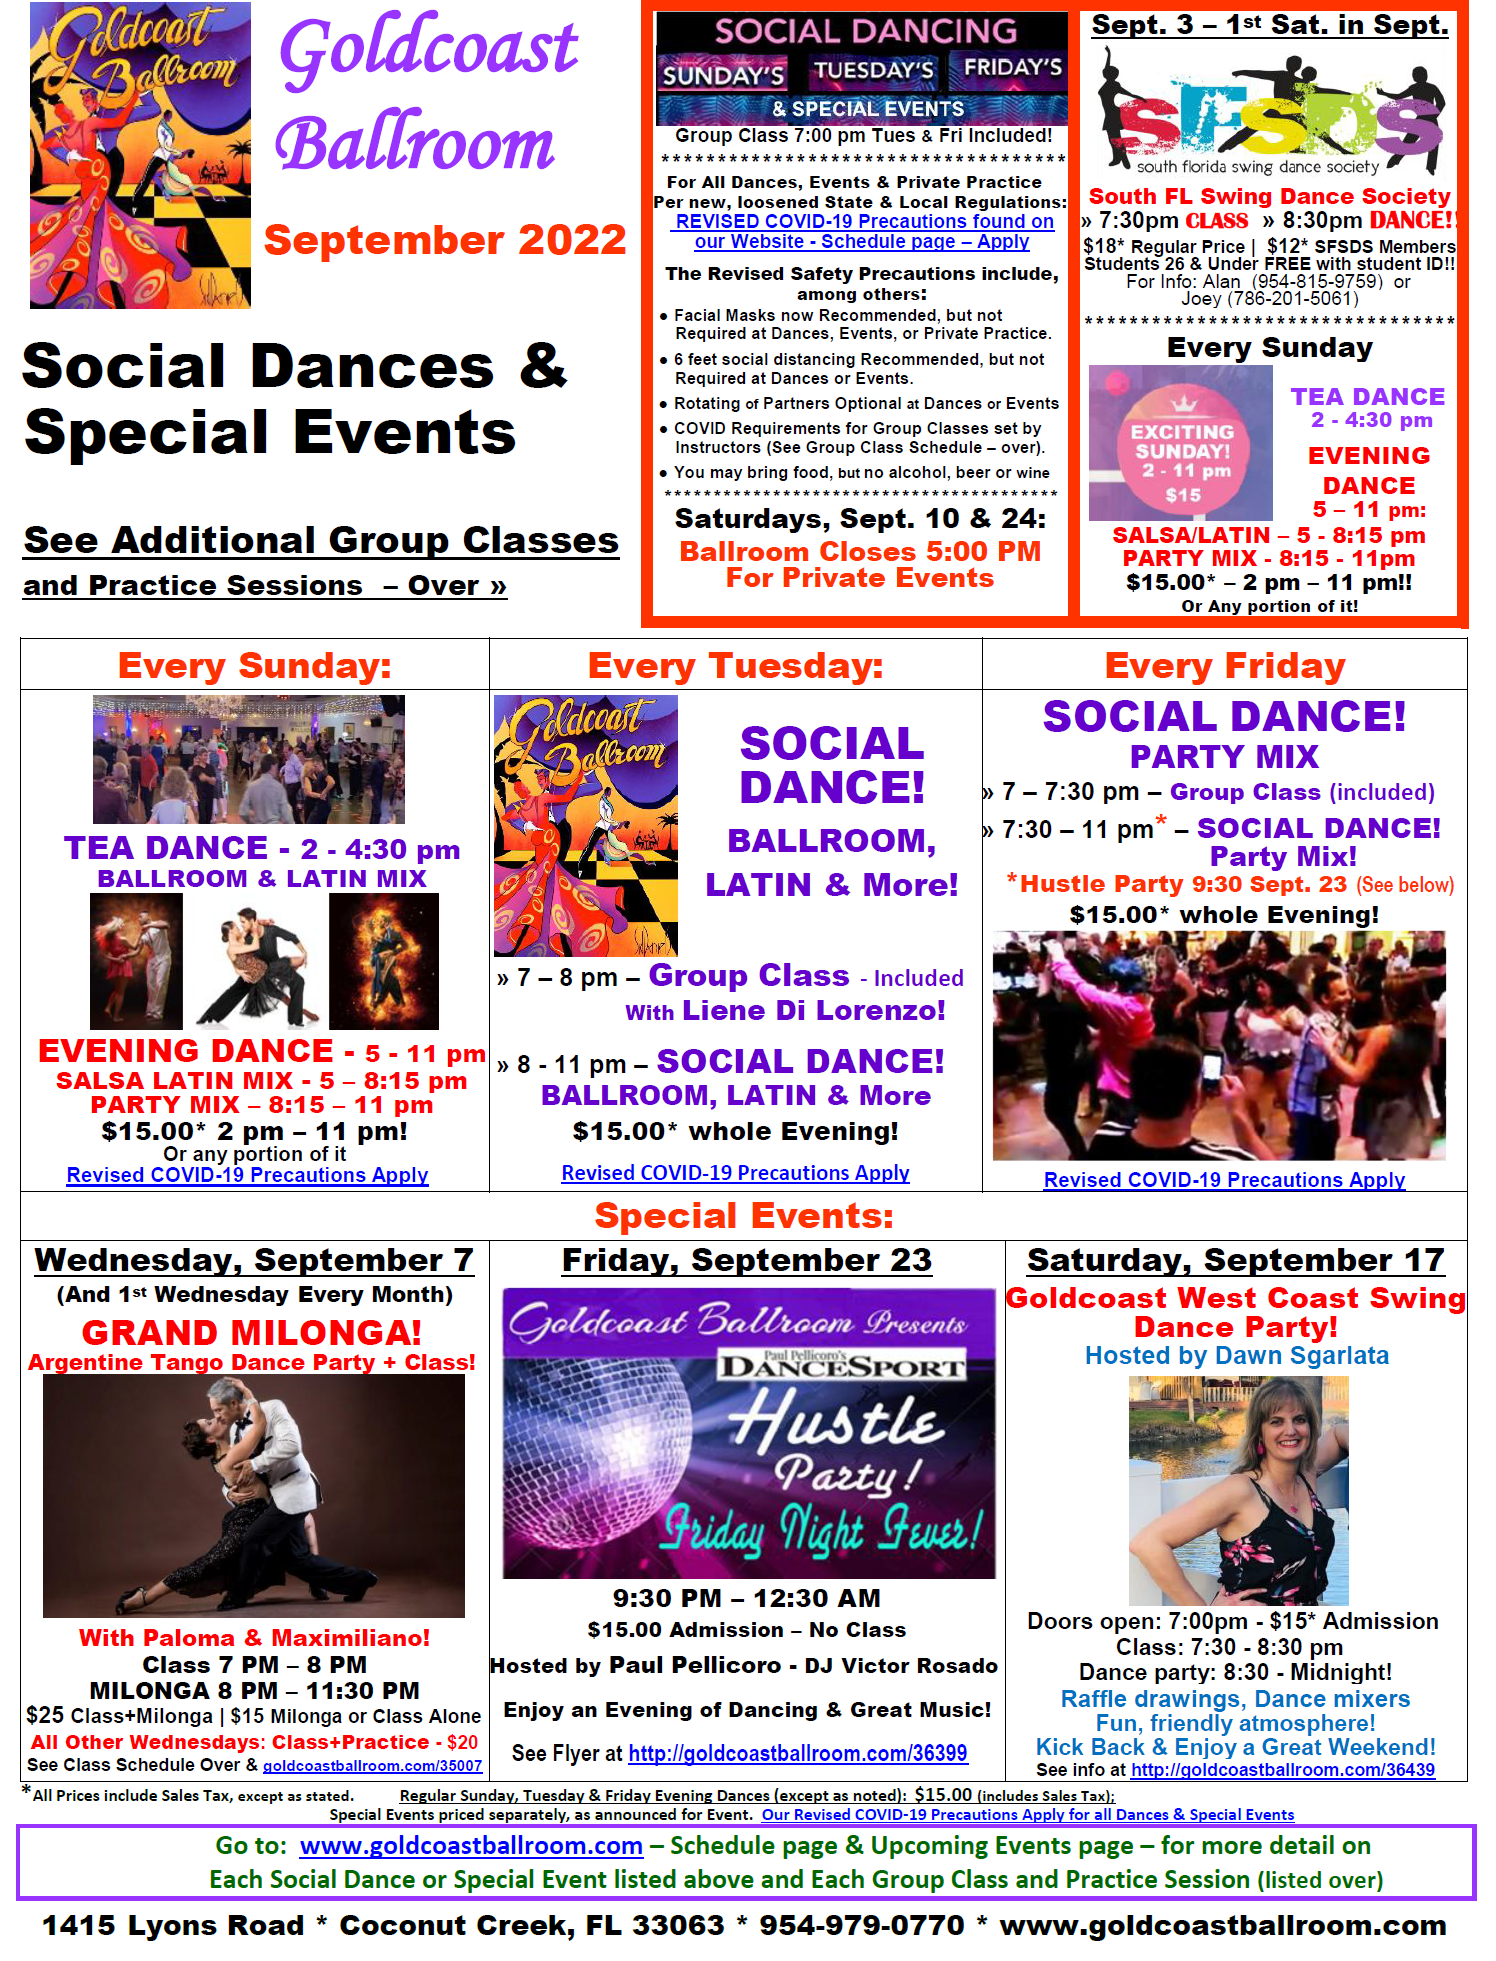 Goldcoast Ballroom September 2022 Calendar - Social Dances & Special Events